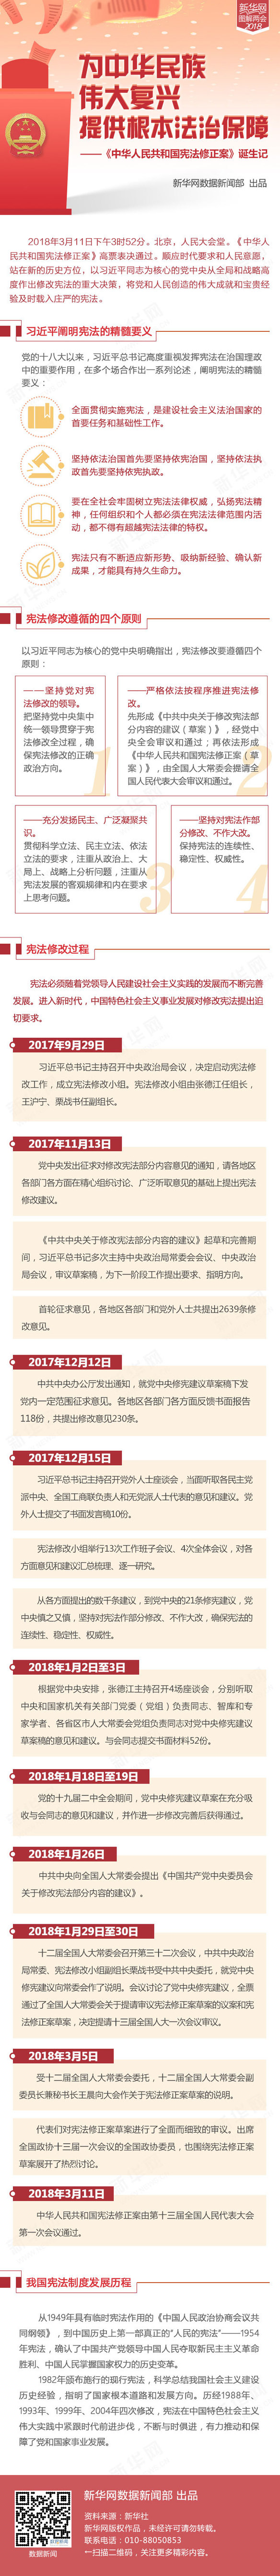 《中华人民共和国宪法修正案》诞生记.jpg